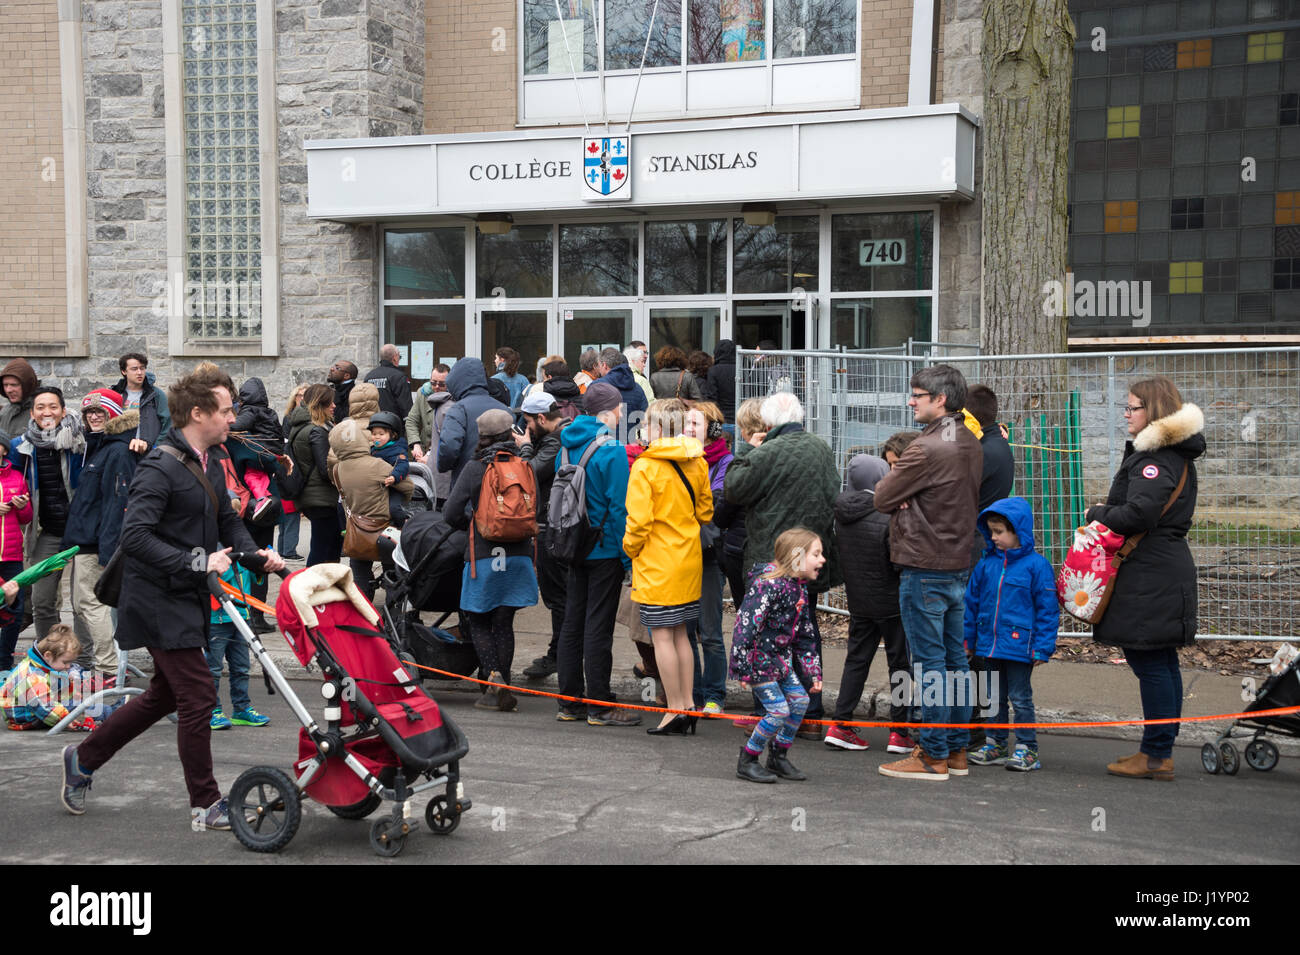 Montréal, CA - 22 Avril 2017 : des ressortissants français à Montréal font la queue au Collège Stanislas pour voter pour le premier tour de l'élection présidentielle française de 2017. Crédit : Marc Bruxelles/Alamy Live News Banque D'Images